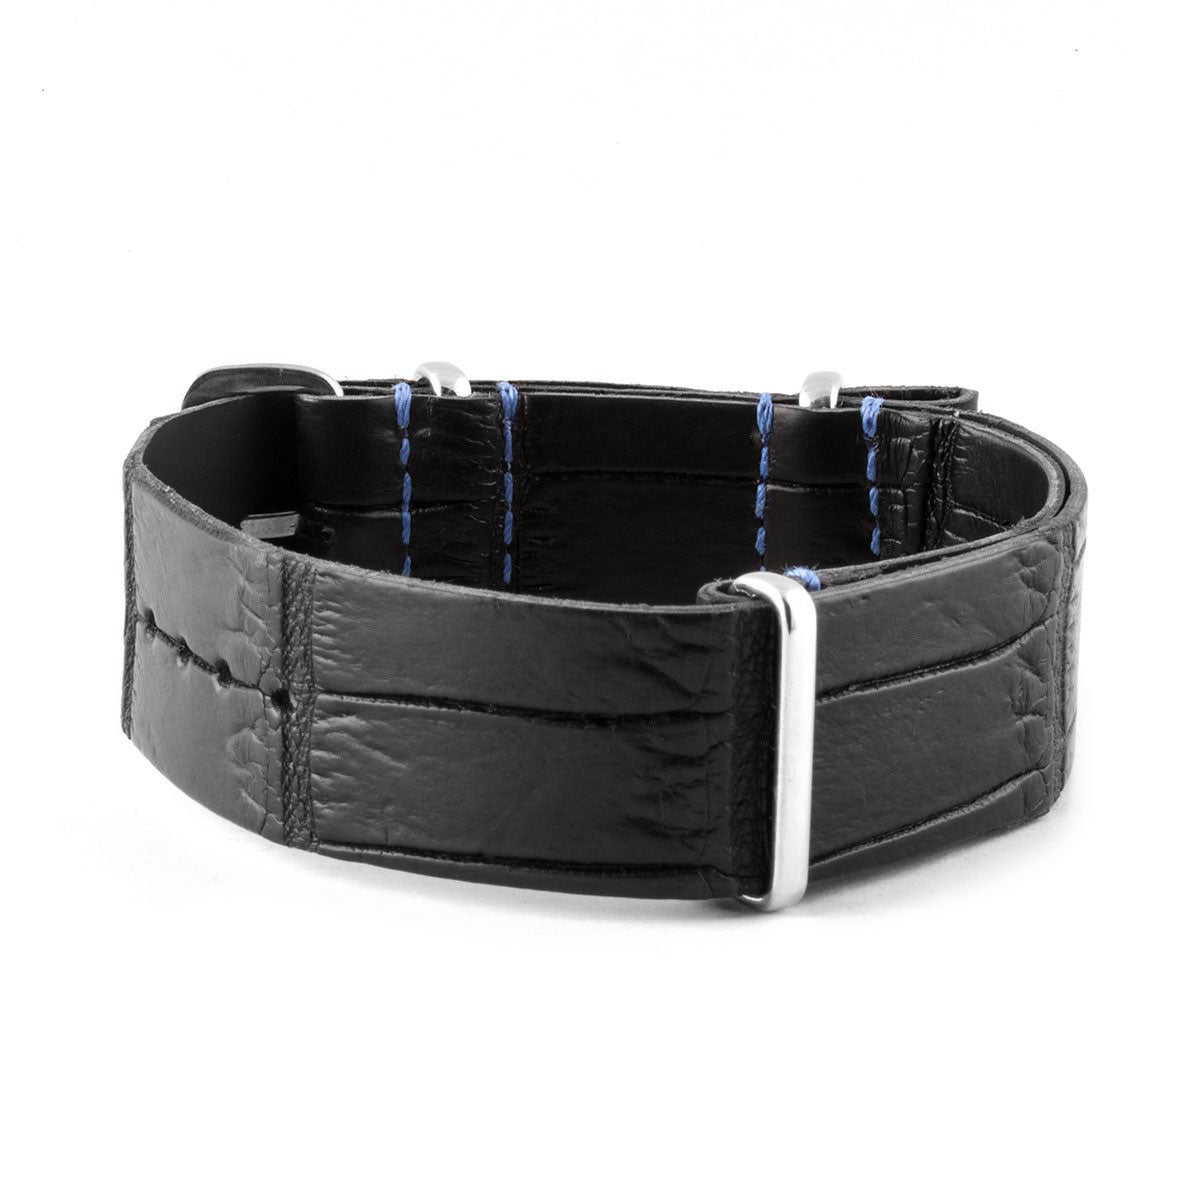 Rolex - Bracelet montre nato - Alligator (noir, bleu) - watch band leather strap - ABP Concept -